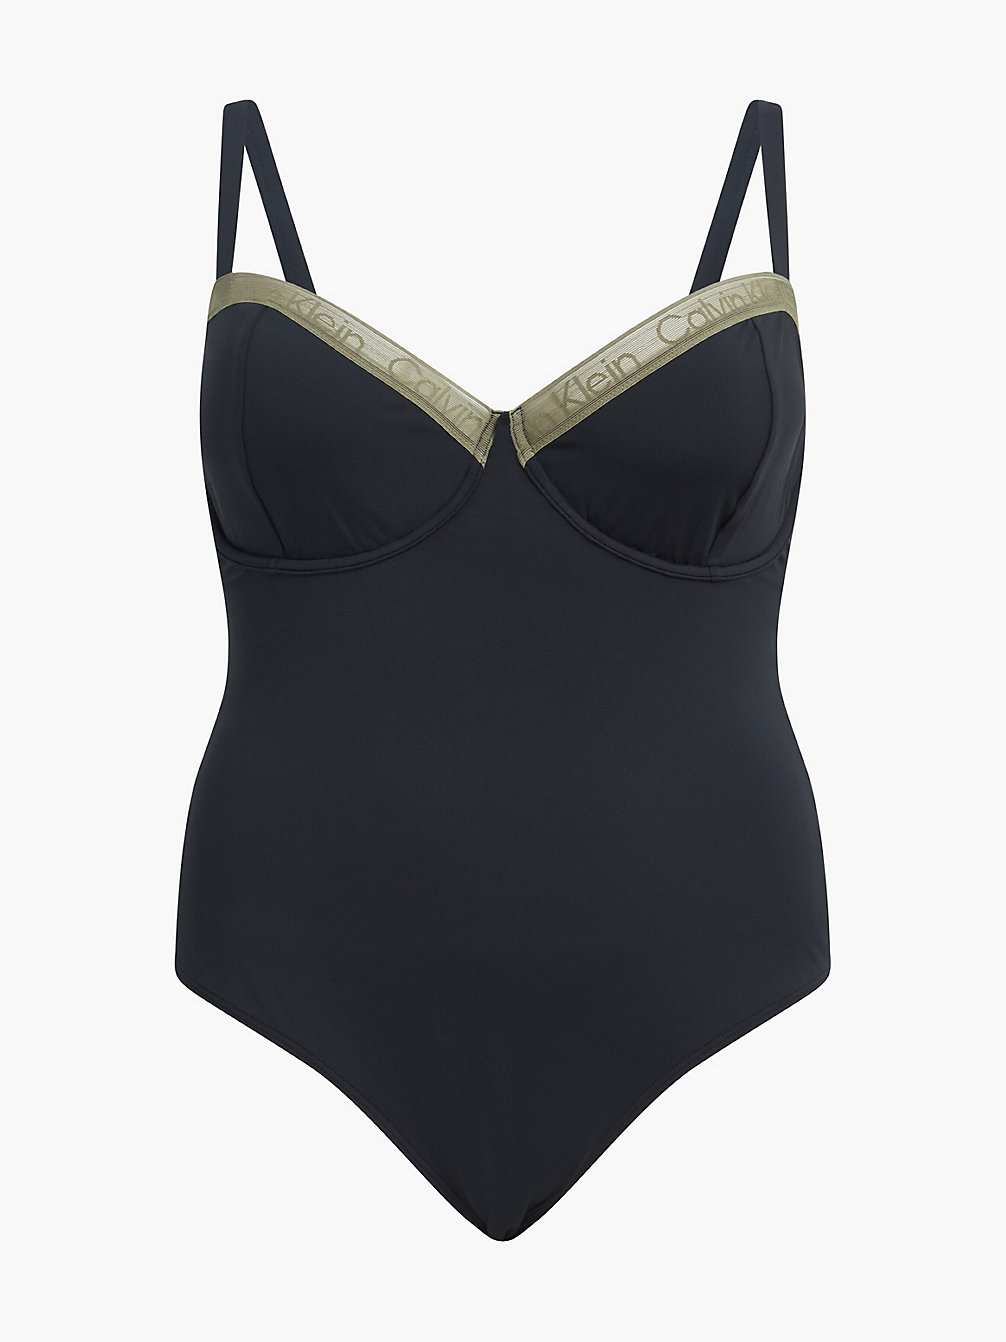 PVH BLACK Plus Size Balconette Swimsuit - CK Curve undefined women Calvin Klein